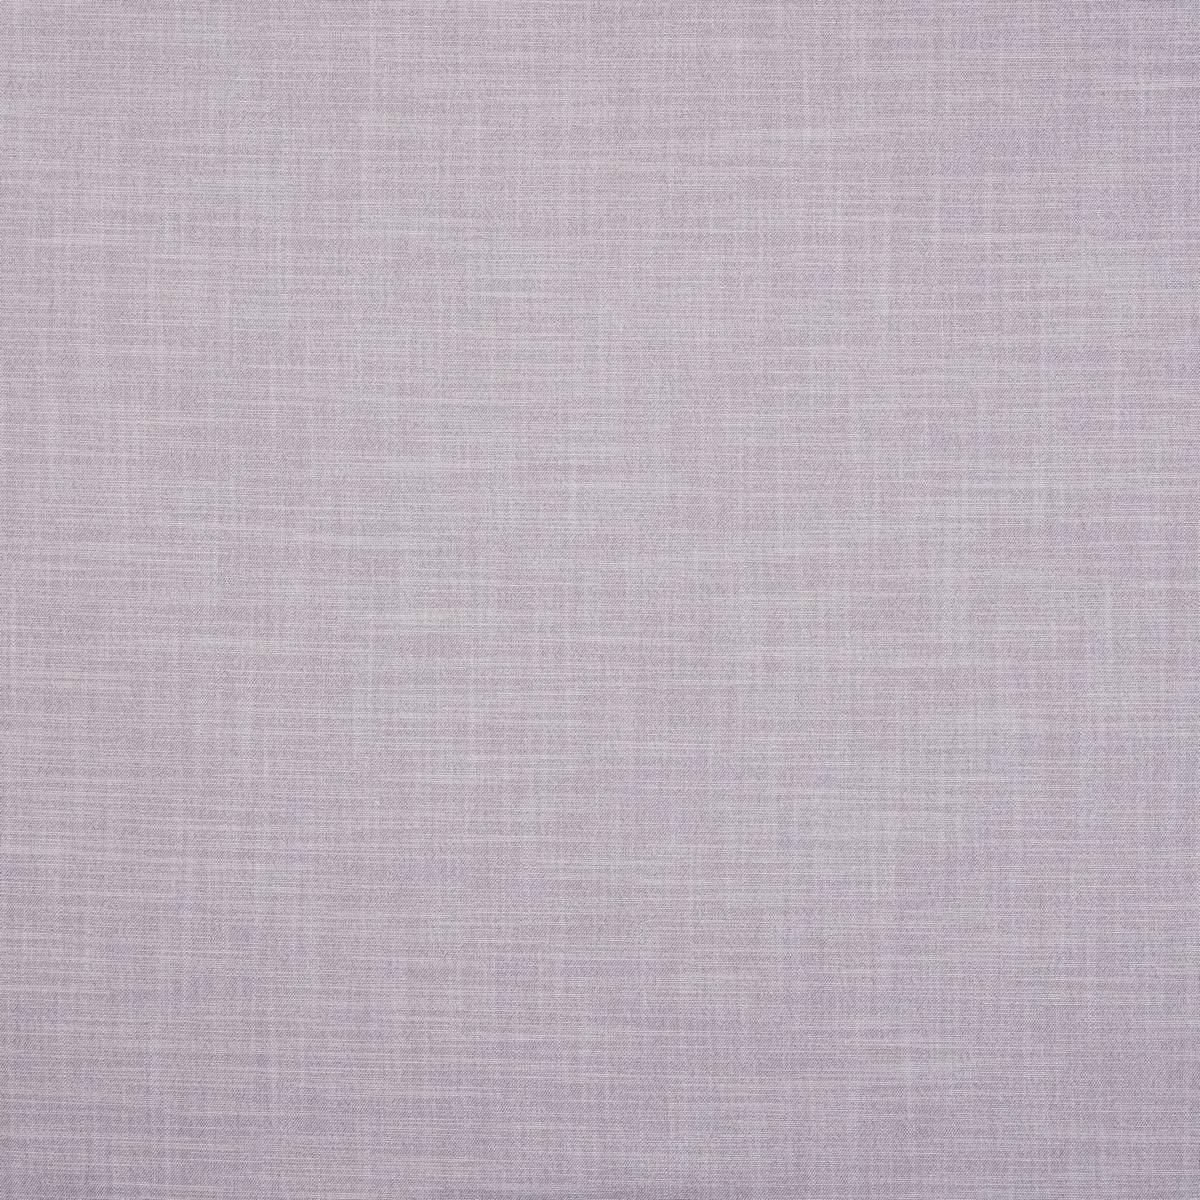 Zander Lilac Fabric by Ashley Wilde